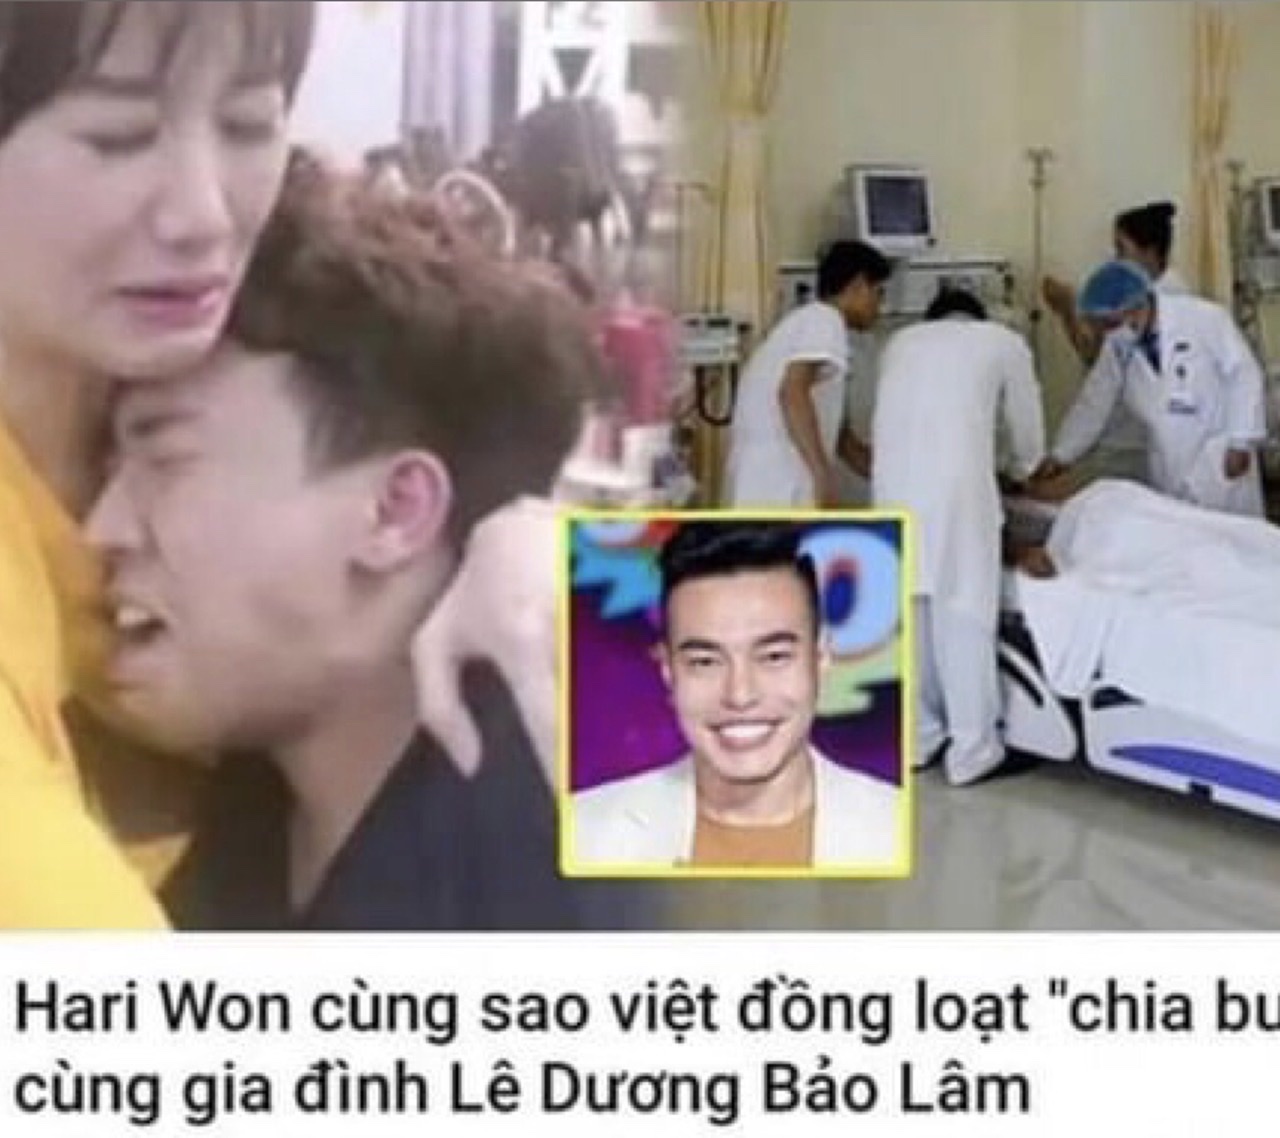 “Thánh livestream” ngã ngửa khi biết tin Hari Won cùng loạt sao Việt khóc nghẹn trong đám tang của... mình - 1